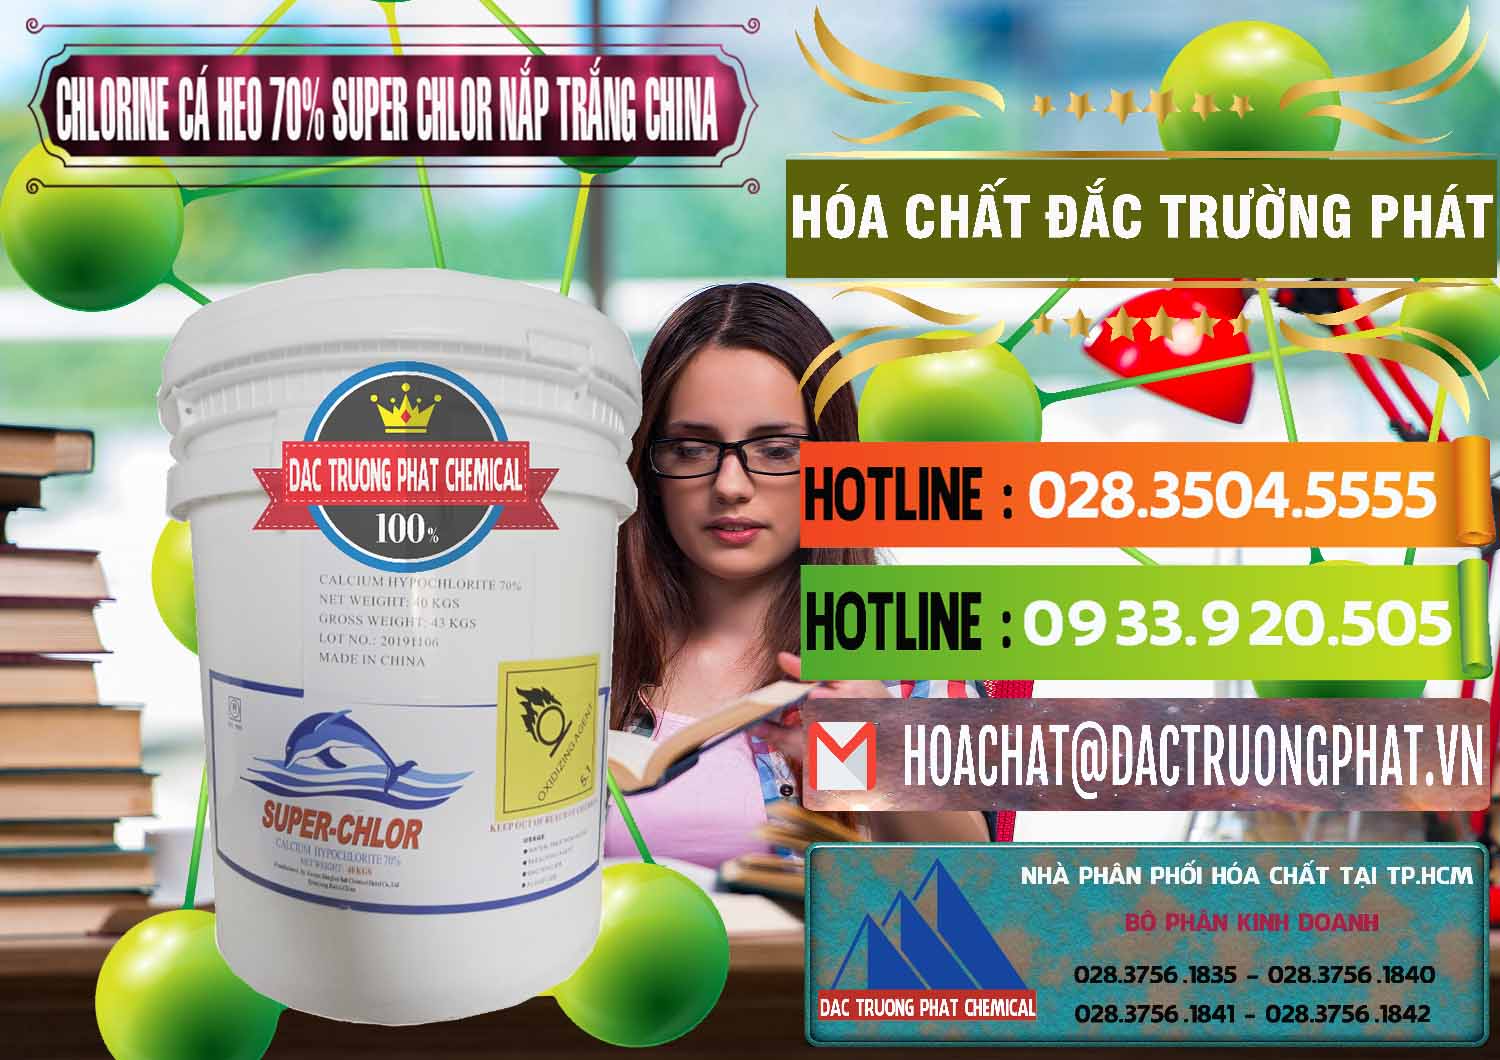 Công ty kinh doanh & bán Clorin - Chlorine Cá Heo 70% Super Chlor Nắp Trắng Trung Quốc China - 0240 - Phân phối & nhập khẩu hóa chất tại TP.HCM - cungcaphoachat.com.vn